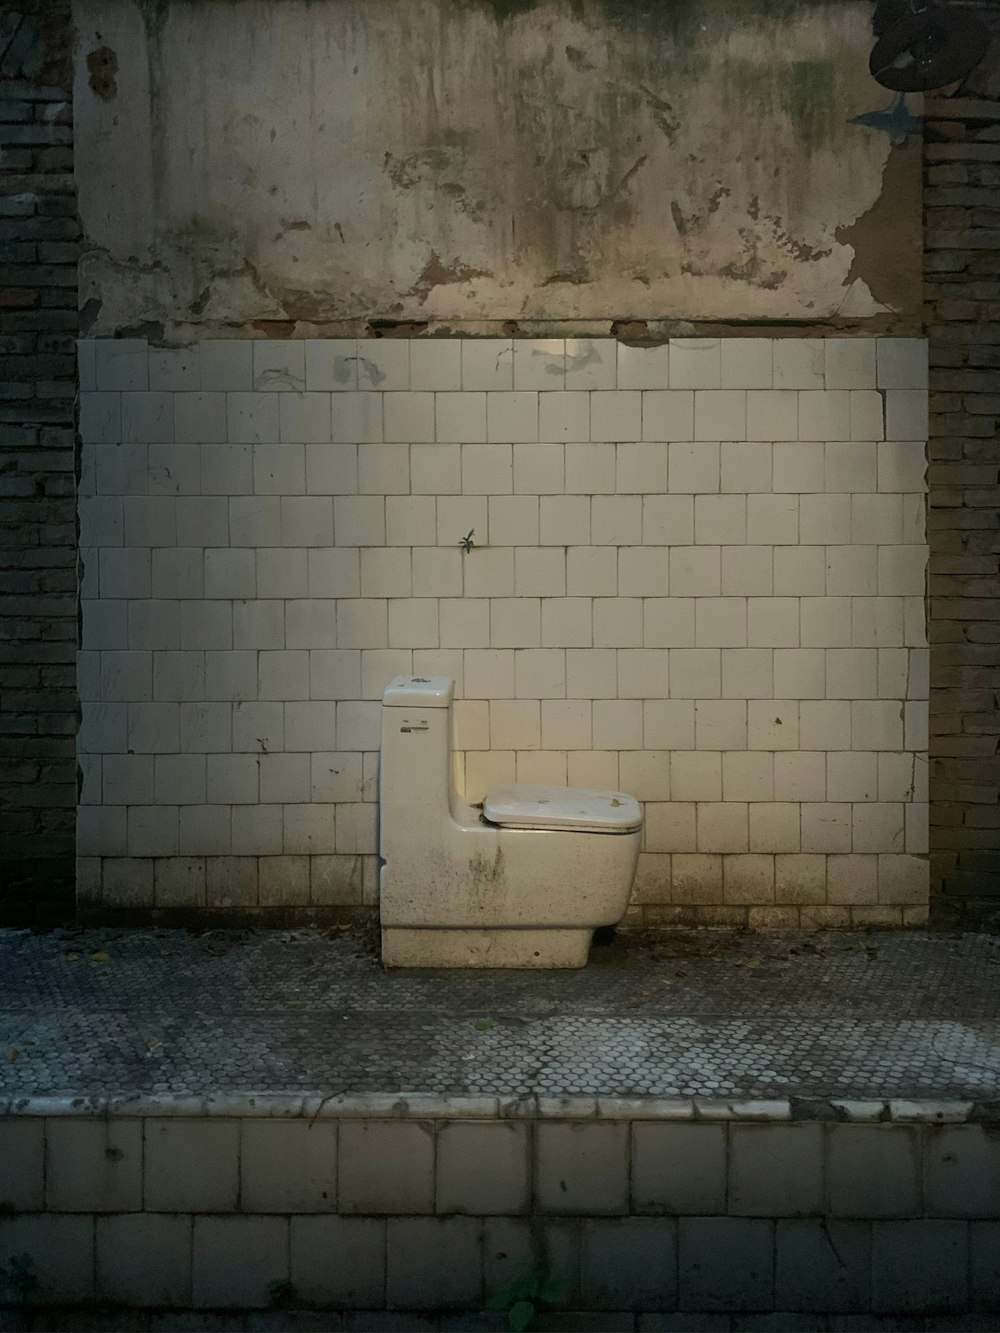 a white toilet sitting next to a brick wall